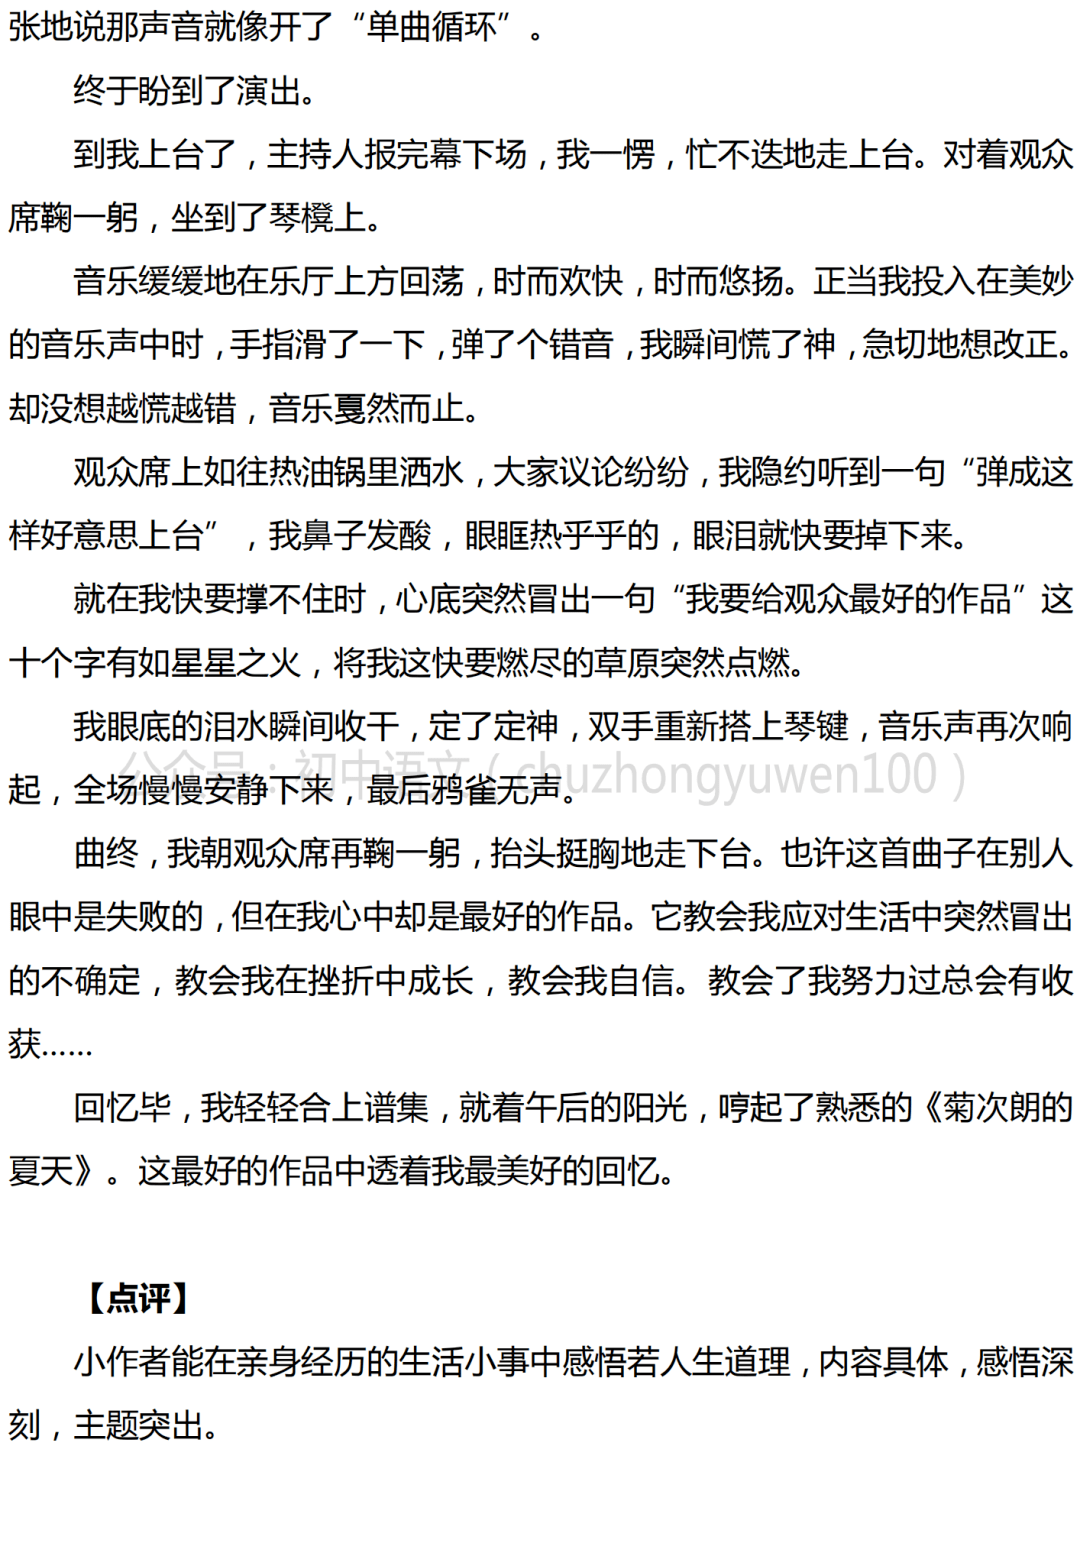 初中语文 中考满分作文 最好的作品 7篇,含解题思路指导 